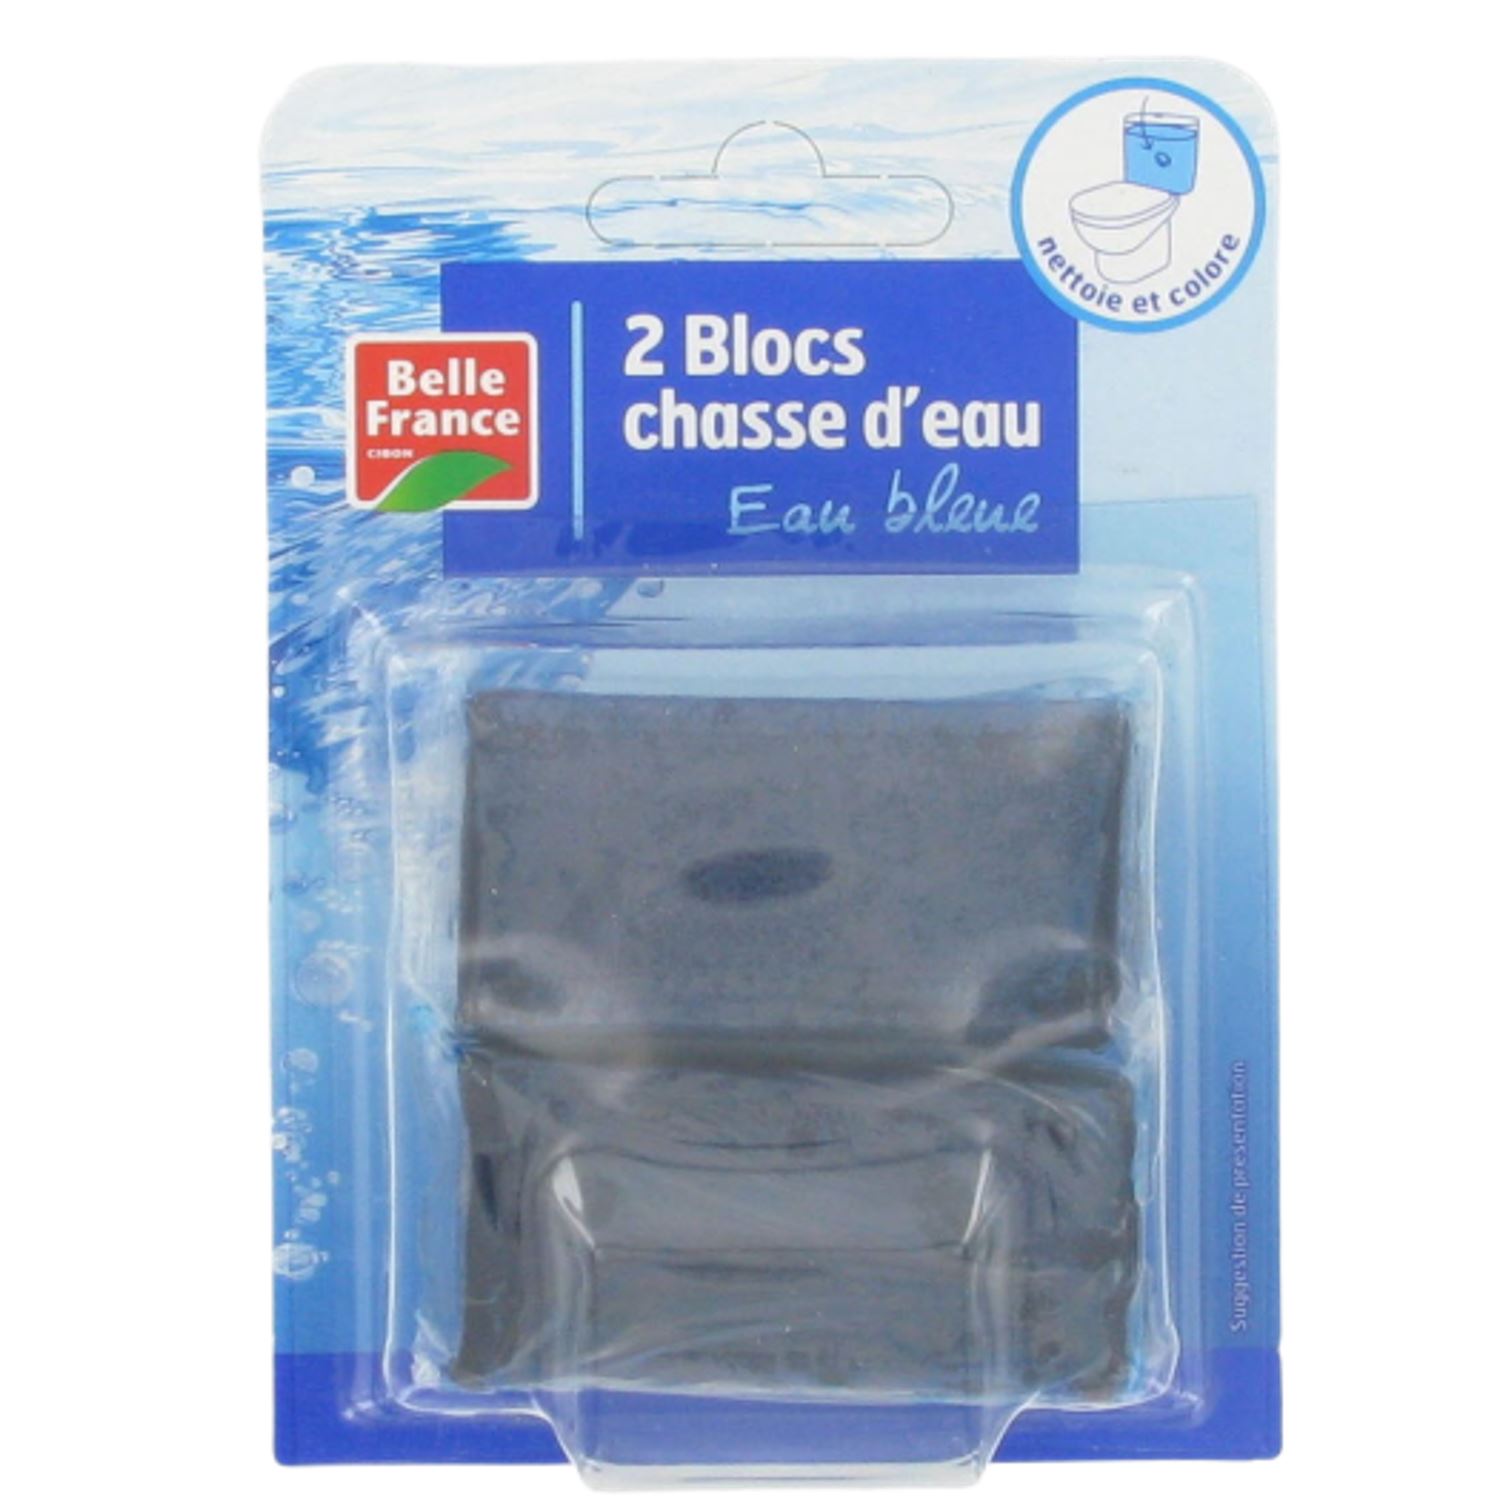 LA CROIX Blister de 2 blocs WC avec Javel 3 en 1 : hygiène anti-tartre et  désodorisant eau Bleue